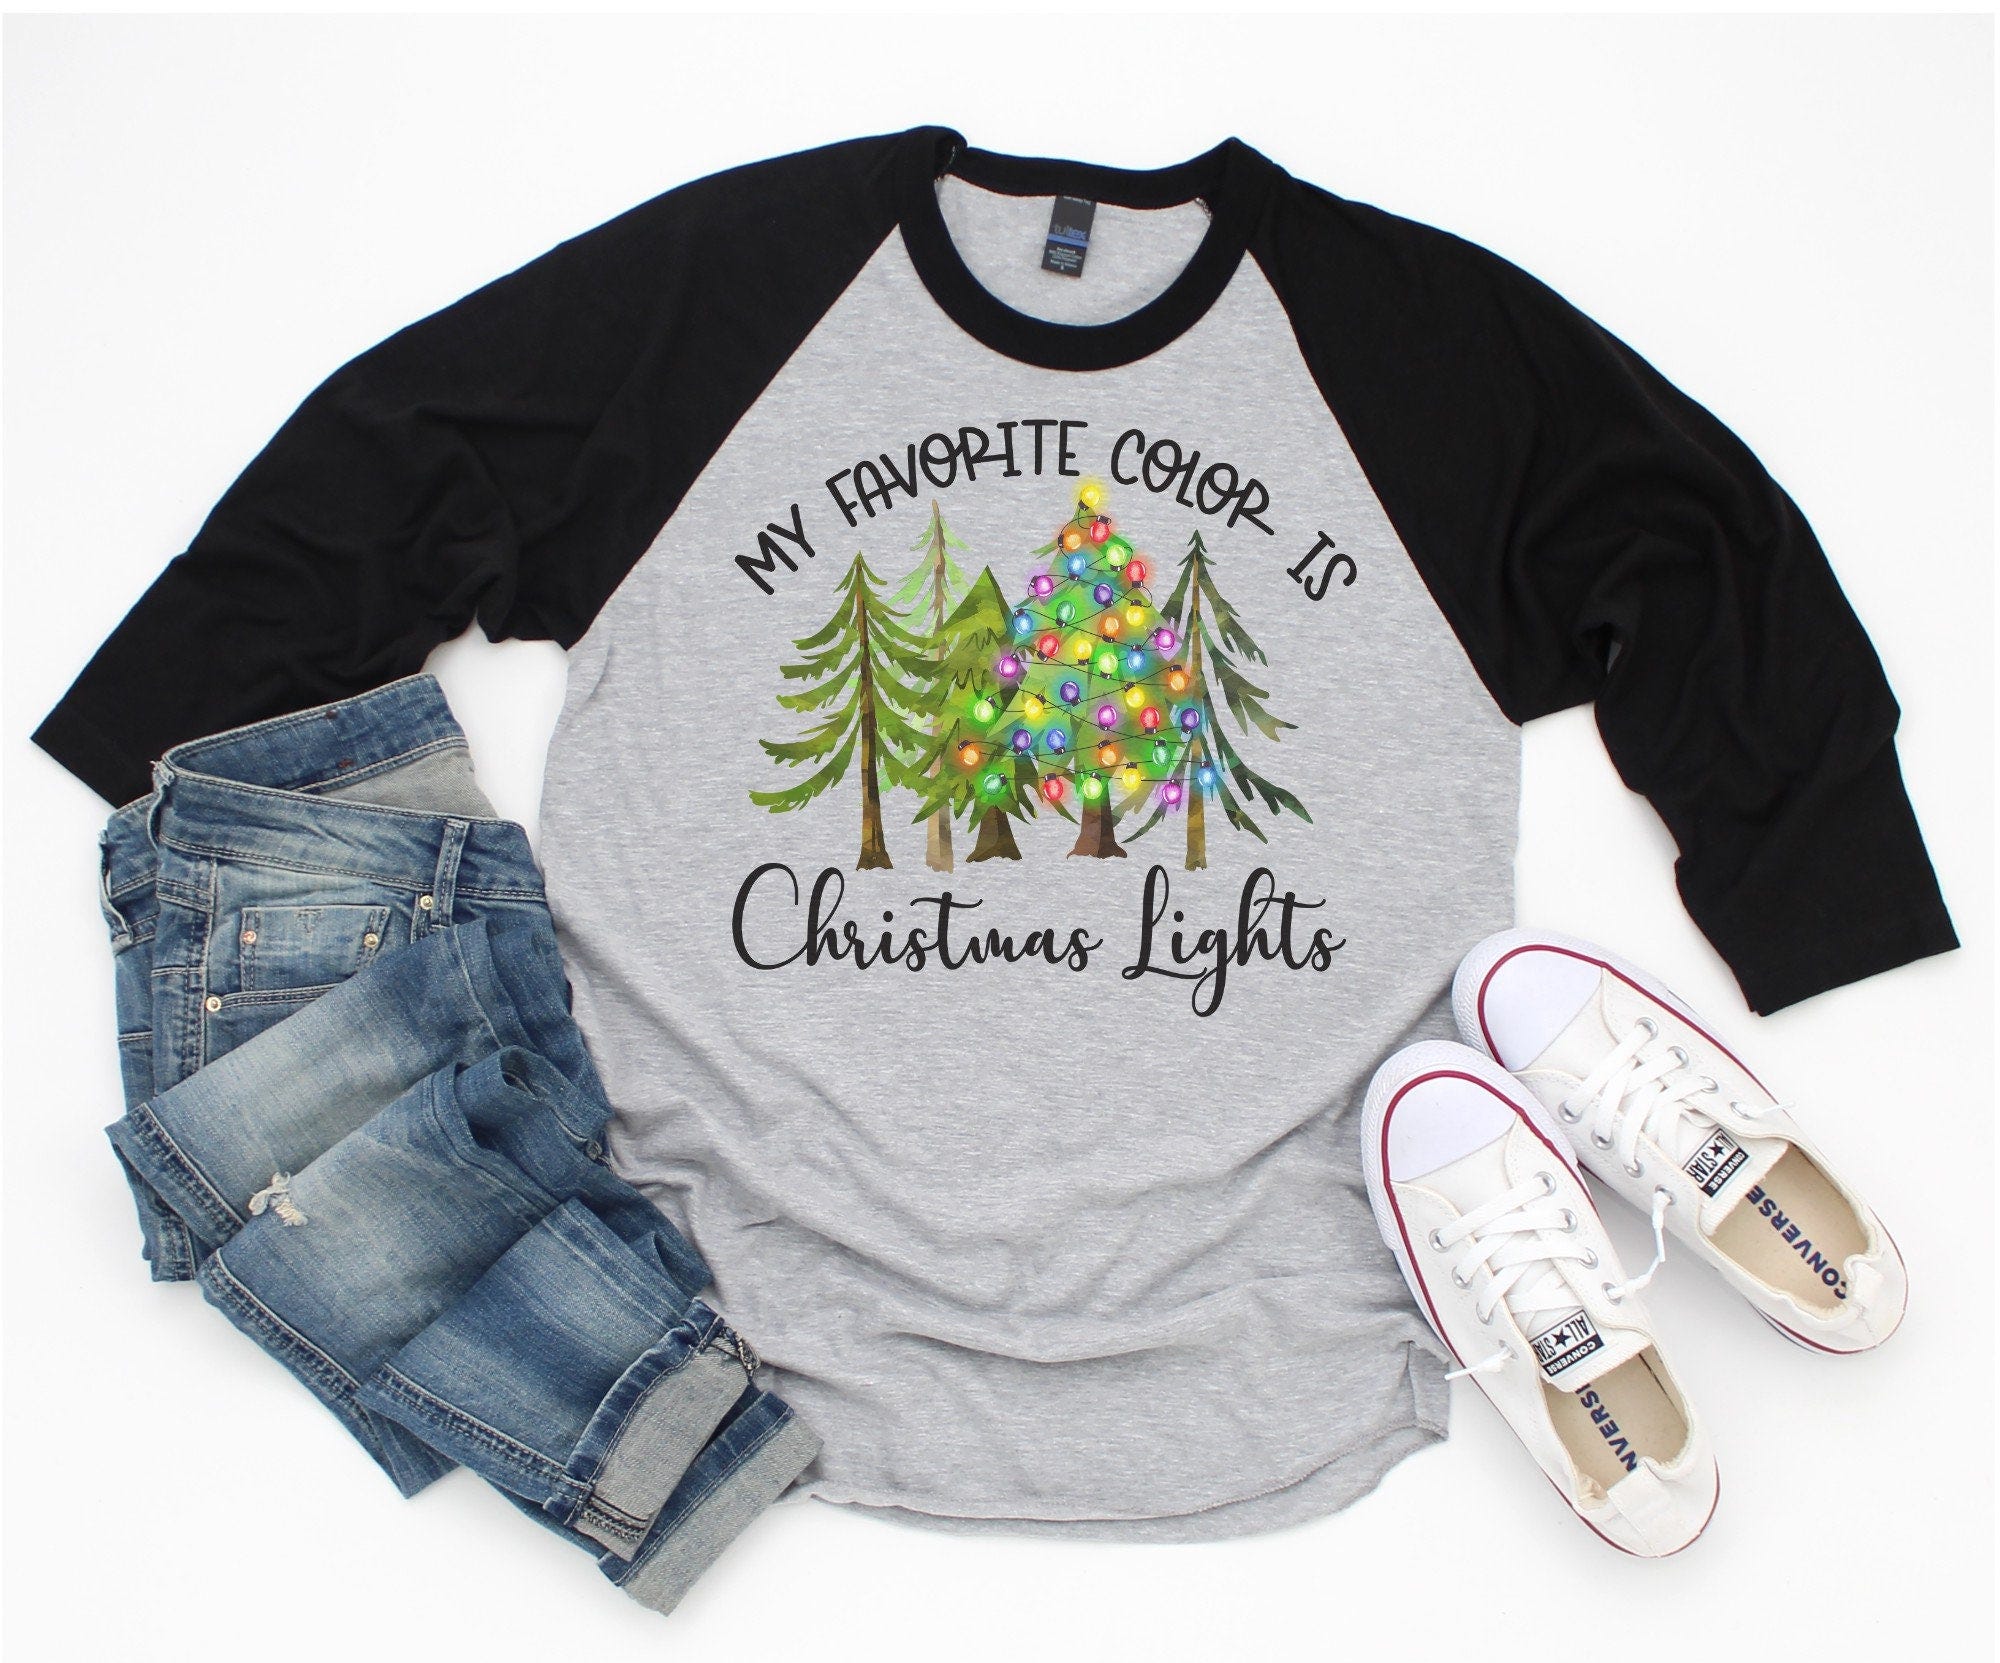 My Favorite Color is Christmas Lights Raglan Tee - Christmas T Shirt - Baseball Tee - 3/4 Length Sleeve Shirt - Cute Christmas Tee